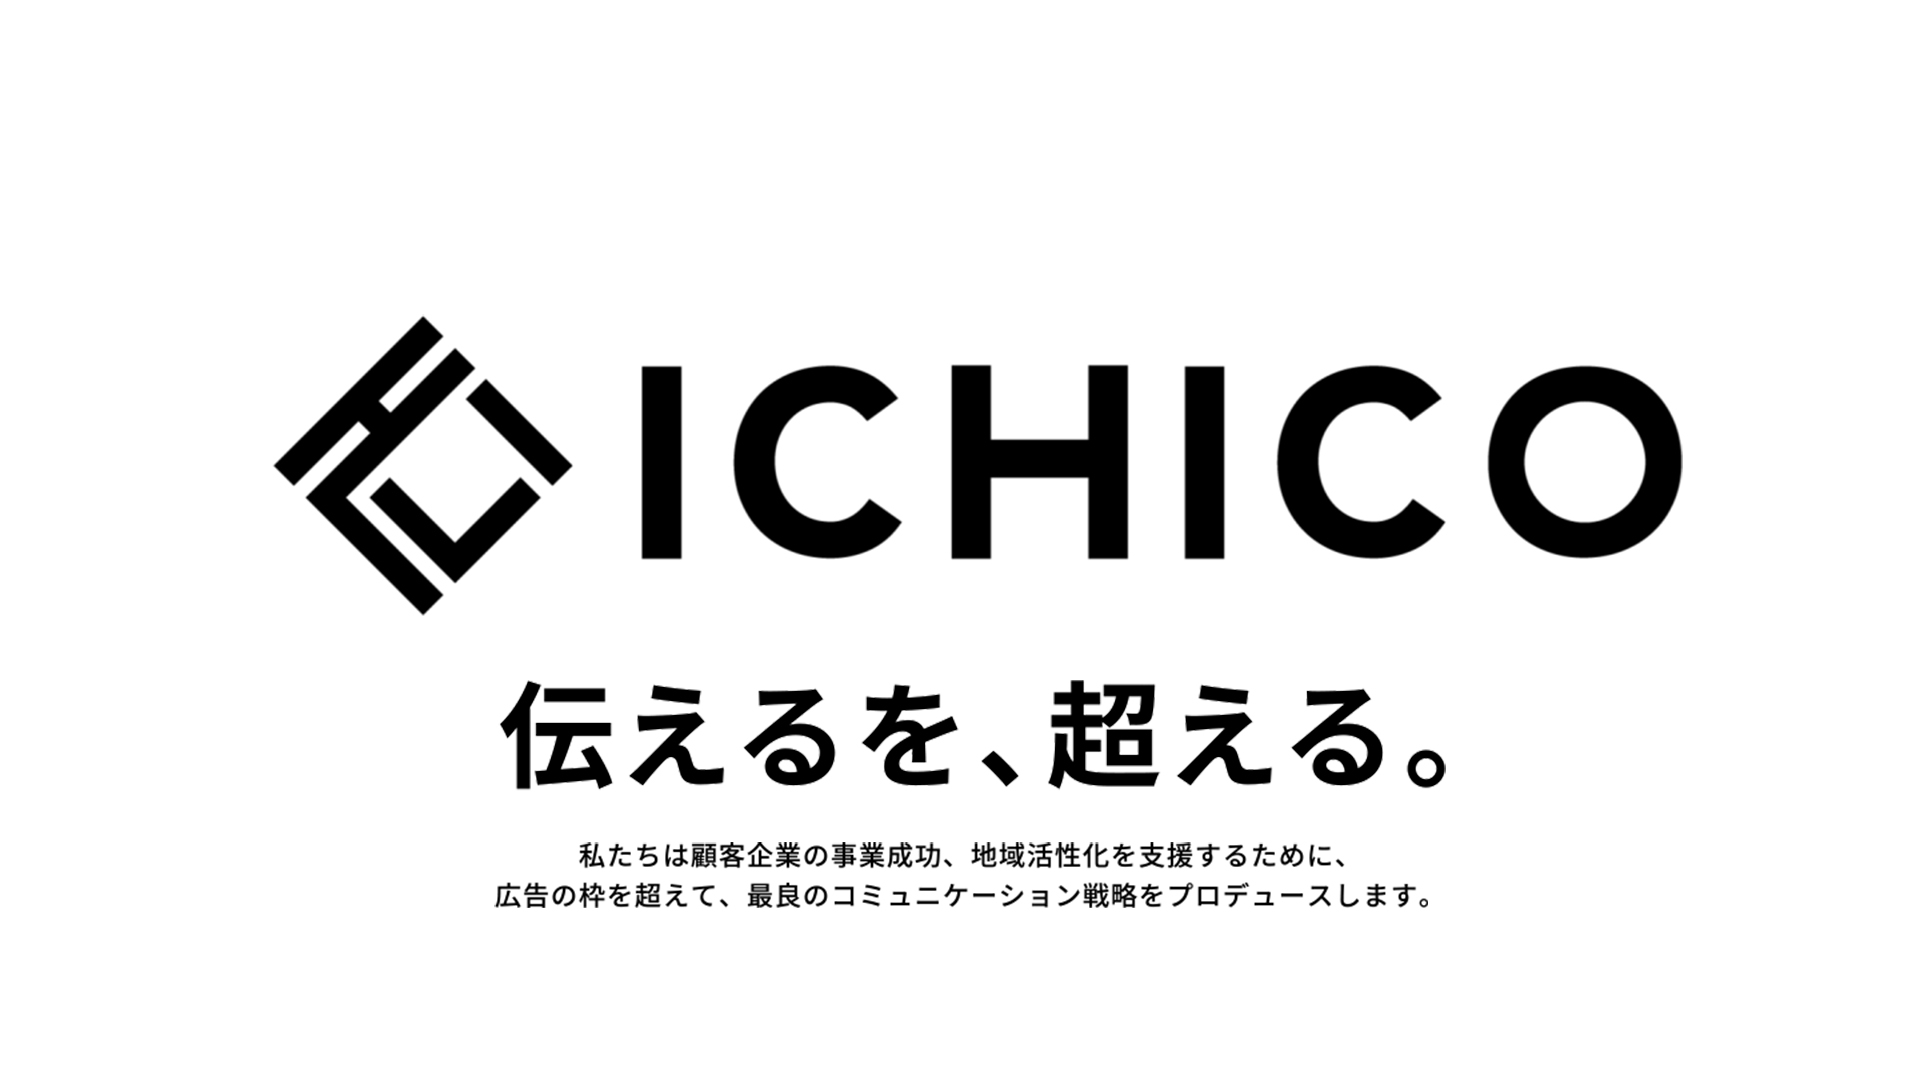 第一広告社からICHICOへ。伝えるを、超える。私たちは顧客企業の事業成功、地域活性化を支援するために、広告の枠を超えて、最良のコミュニケーション戦略をプロデュースします。